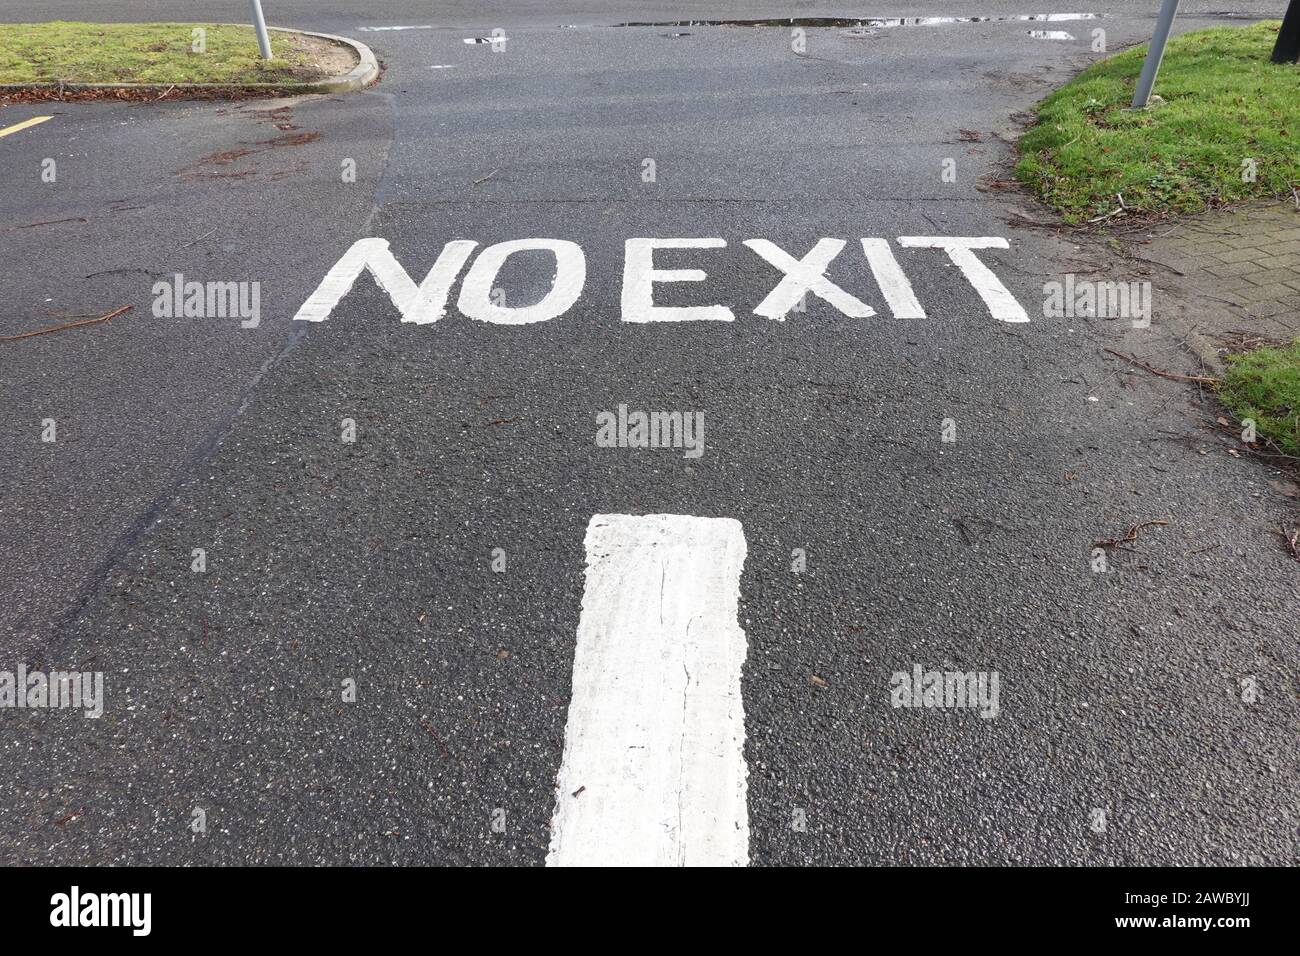 Martlesham Heath, Suffolk, Reino Unido - 8 de febrero de 2020: No hay ninguna salida pintada en la carretera hacia un aparcamiento. Foto de stock